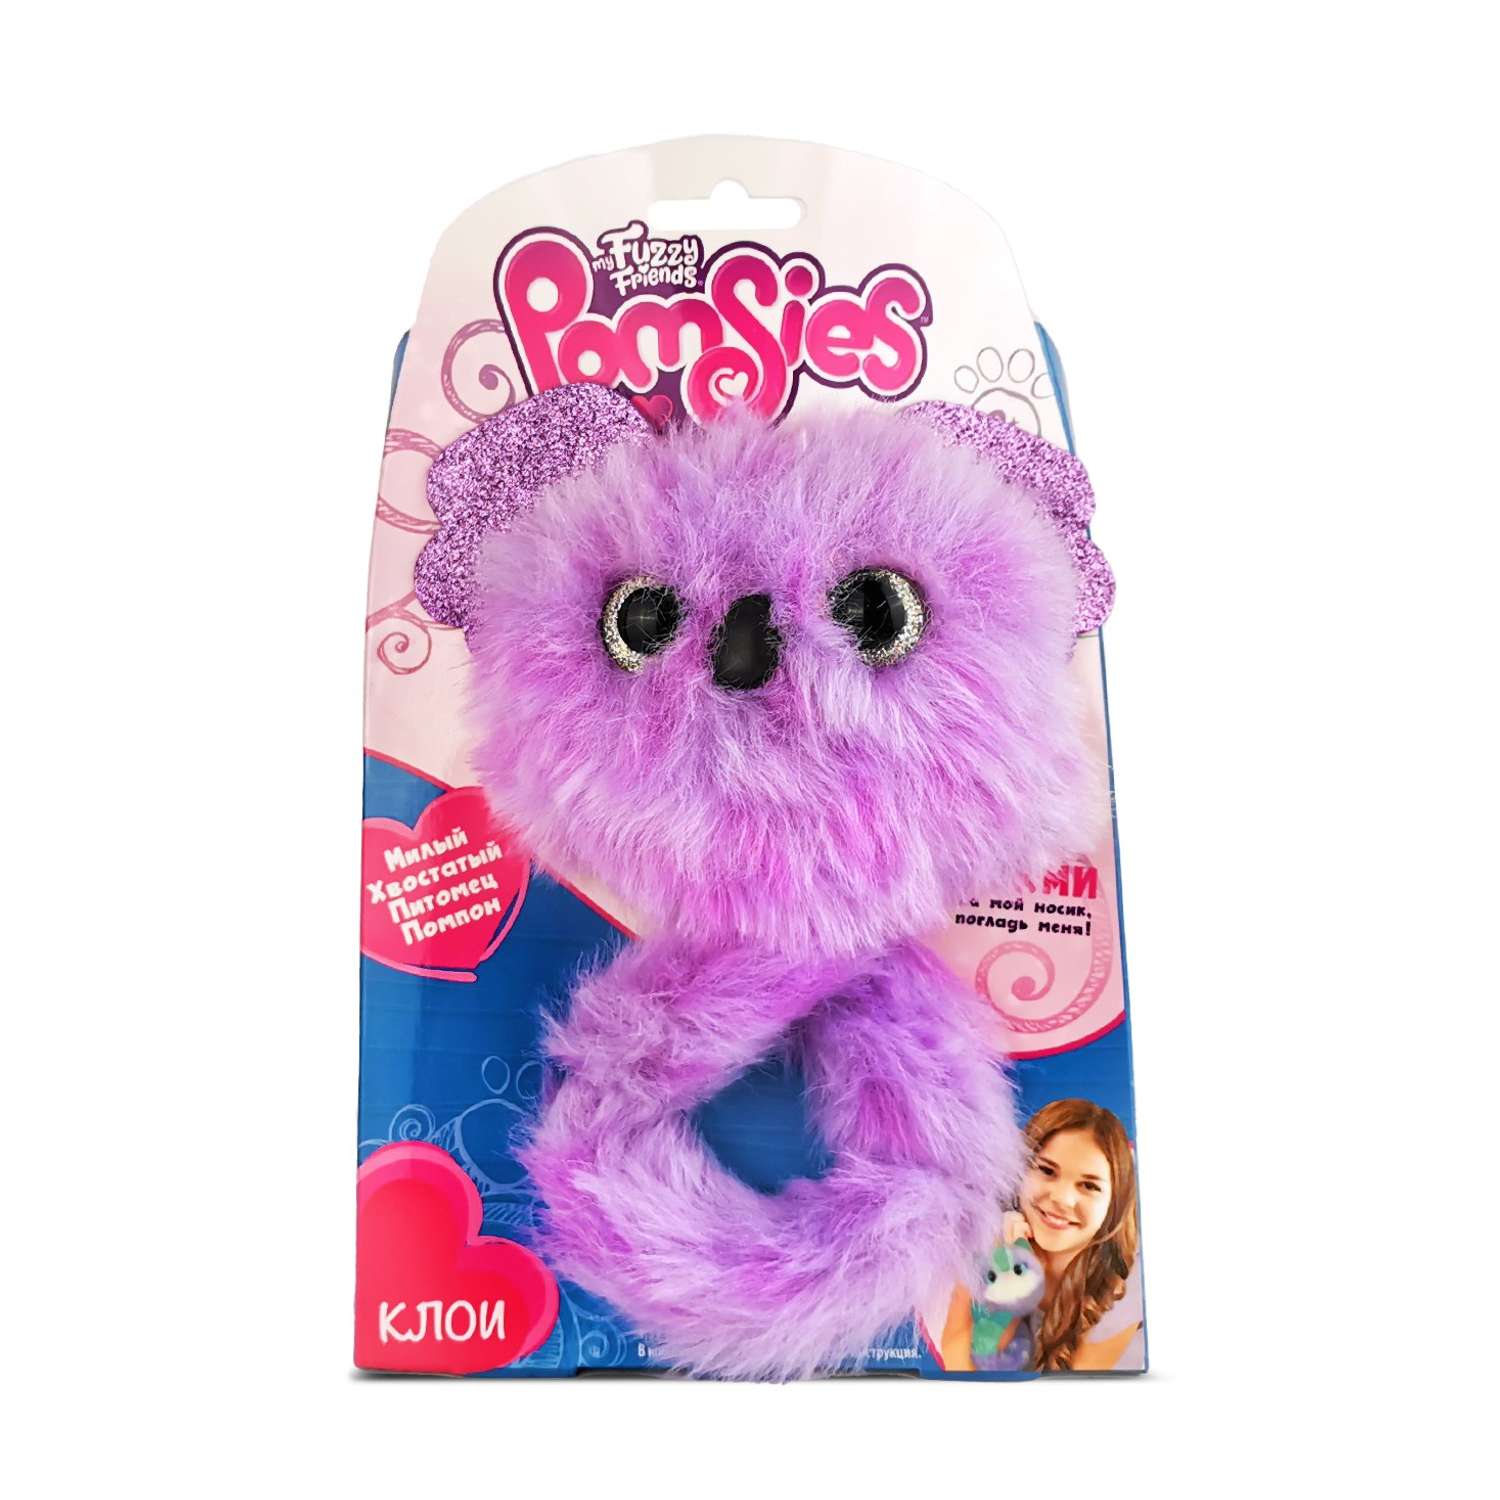 Интерактивная игрушка My Fuzzy Friends Pomsies коала Клои - фото 9